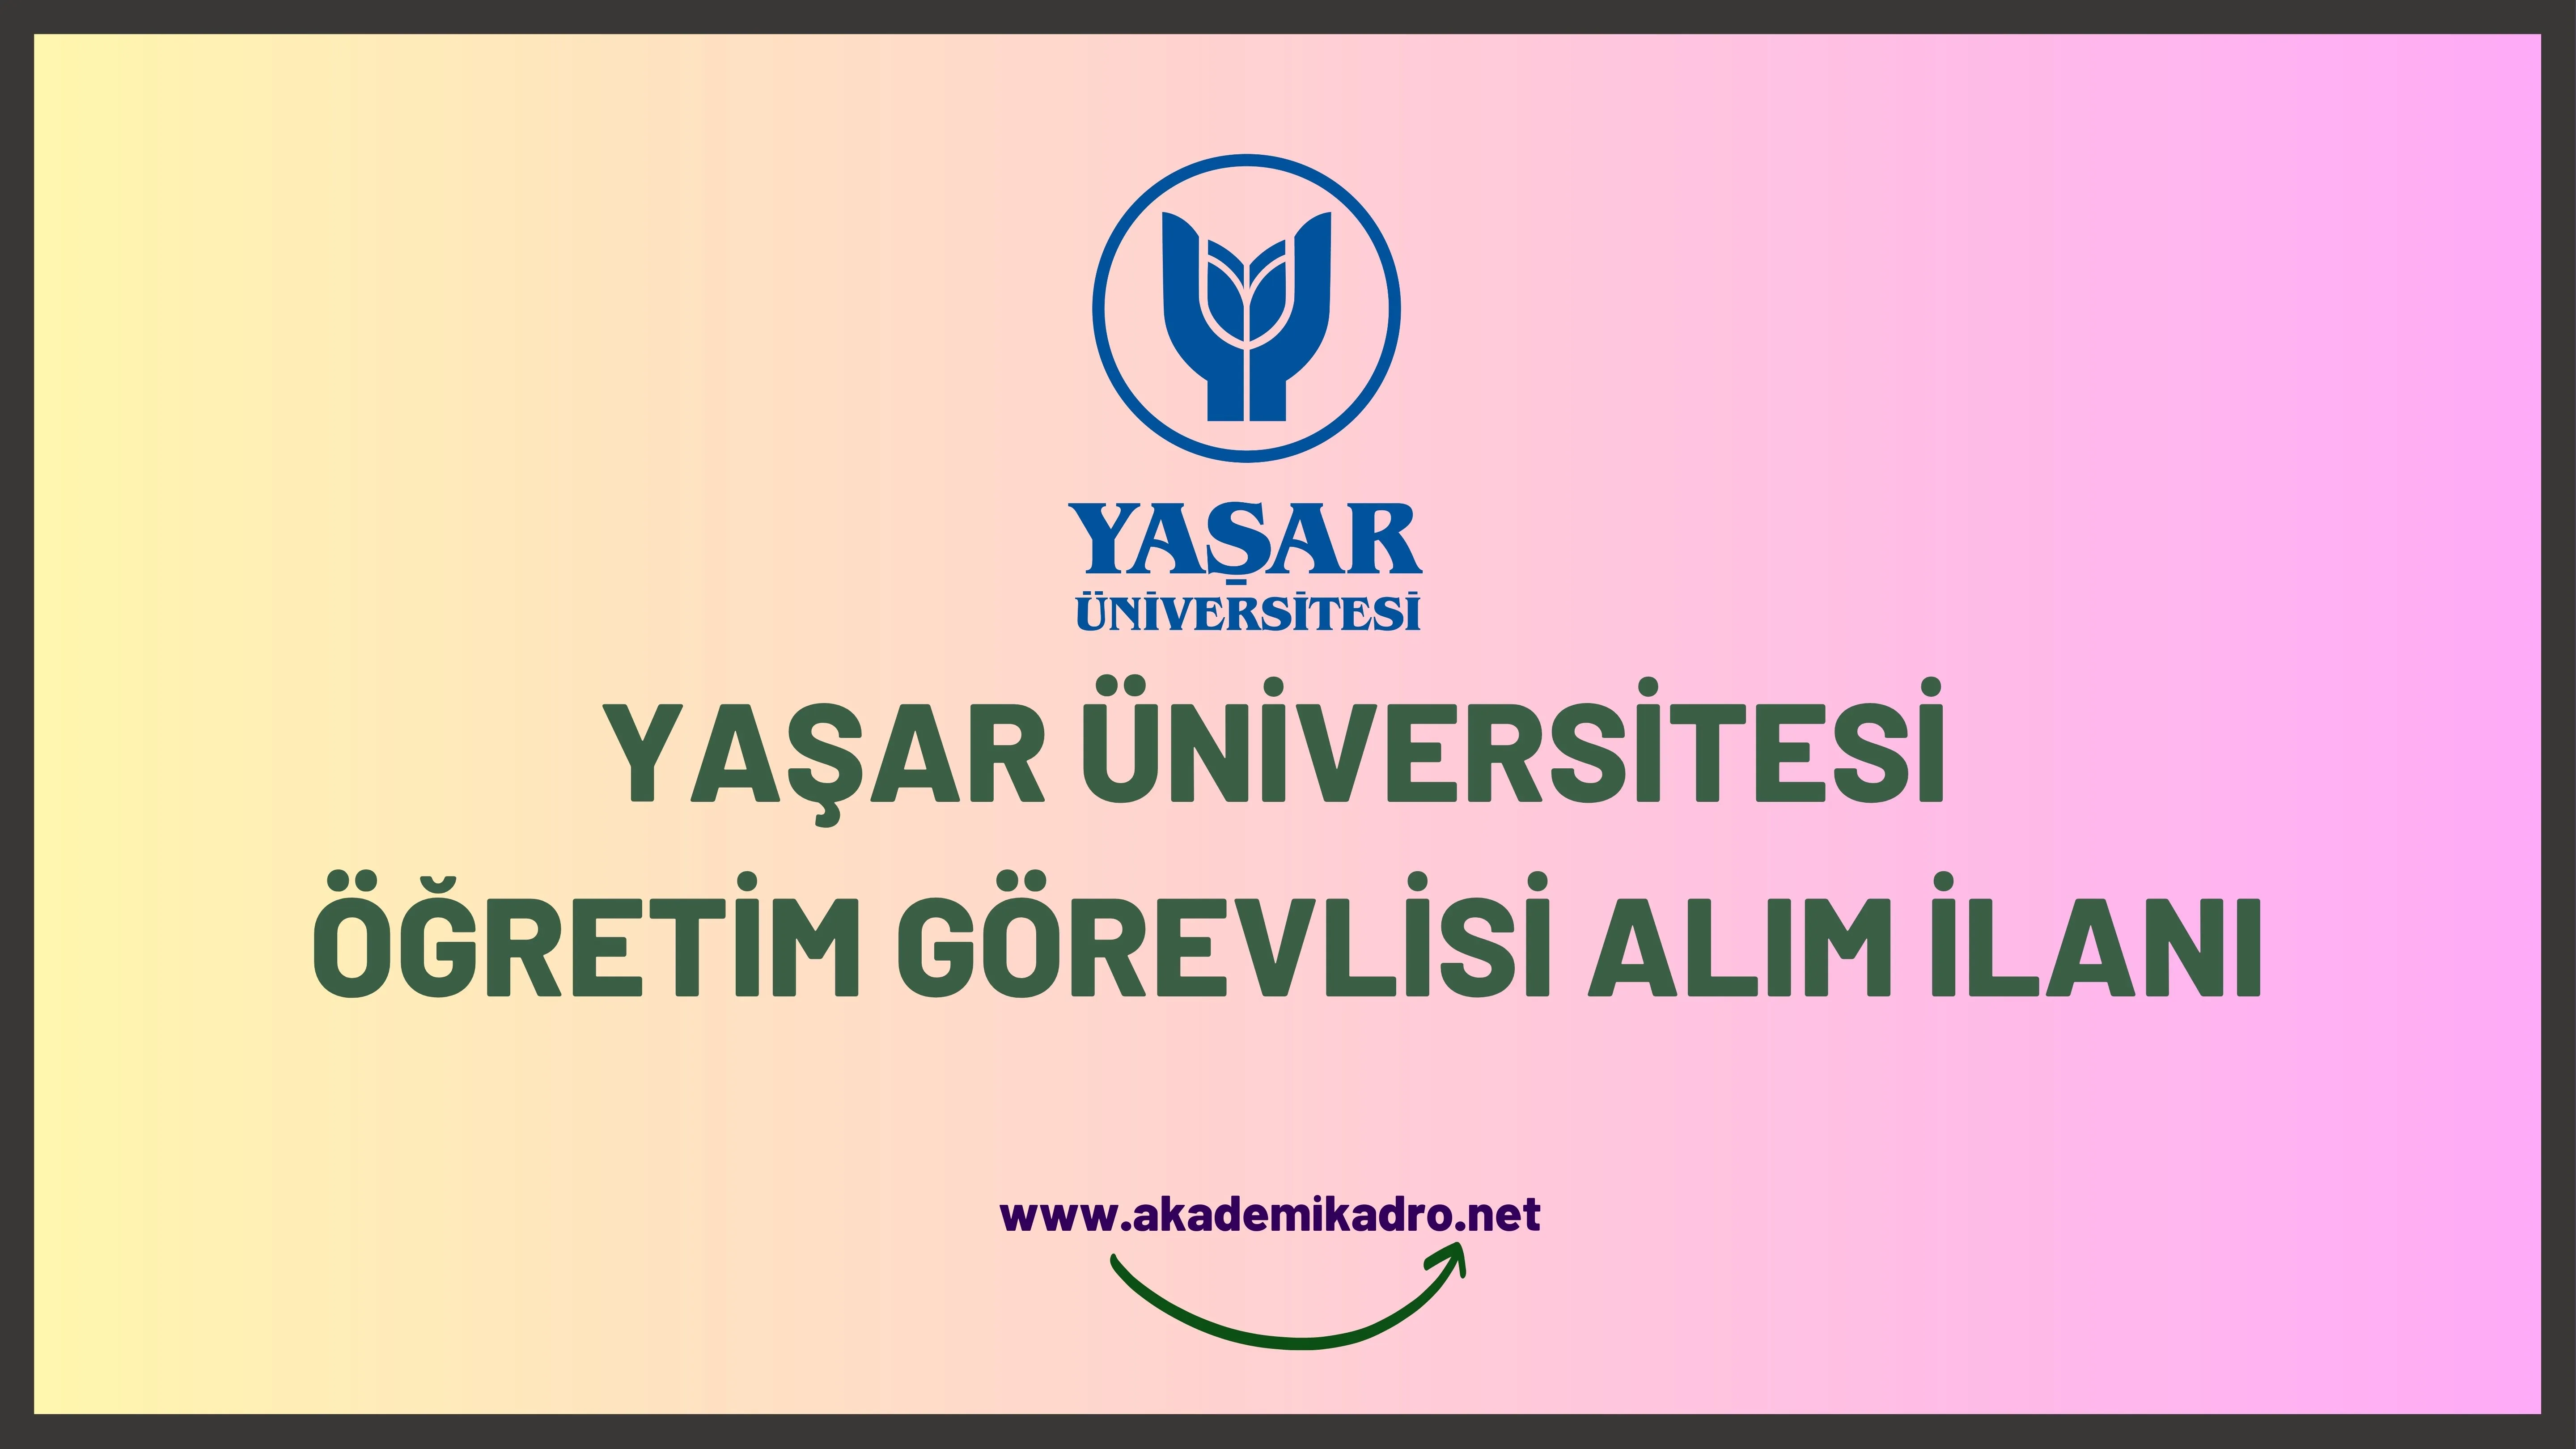 Yaşar Üniversitesi 2 öğretim görevlisi alacaktır. 